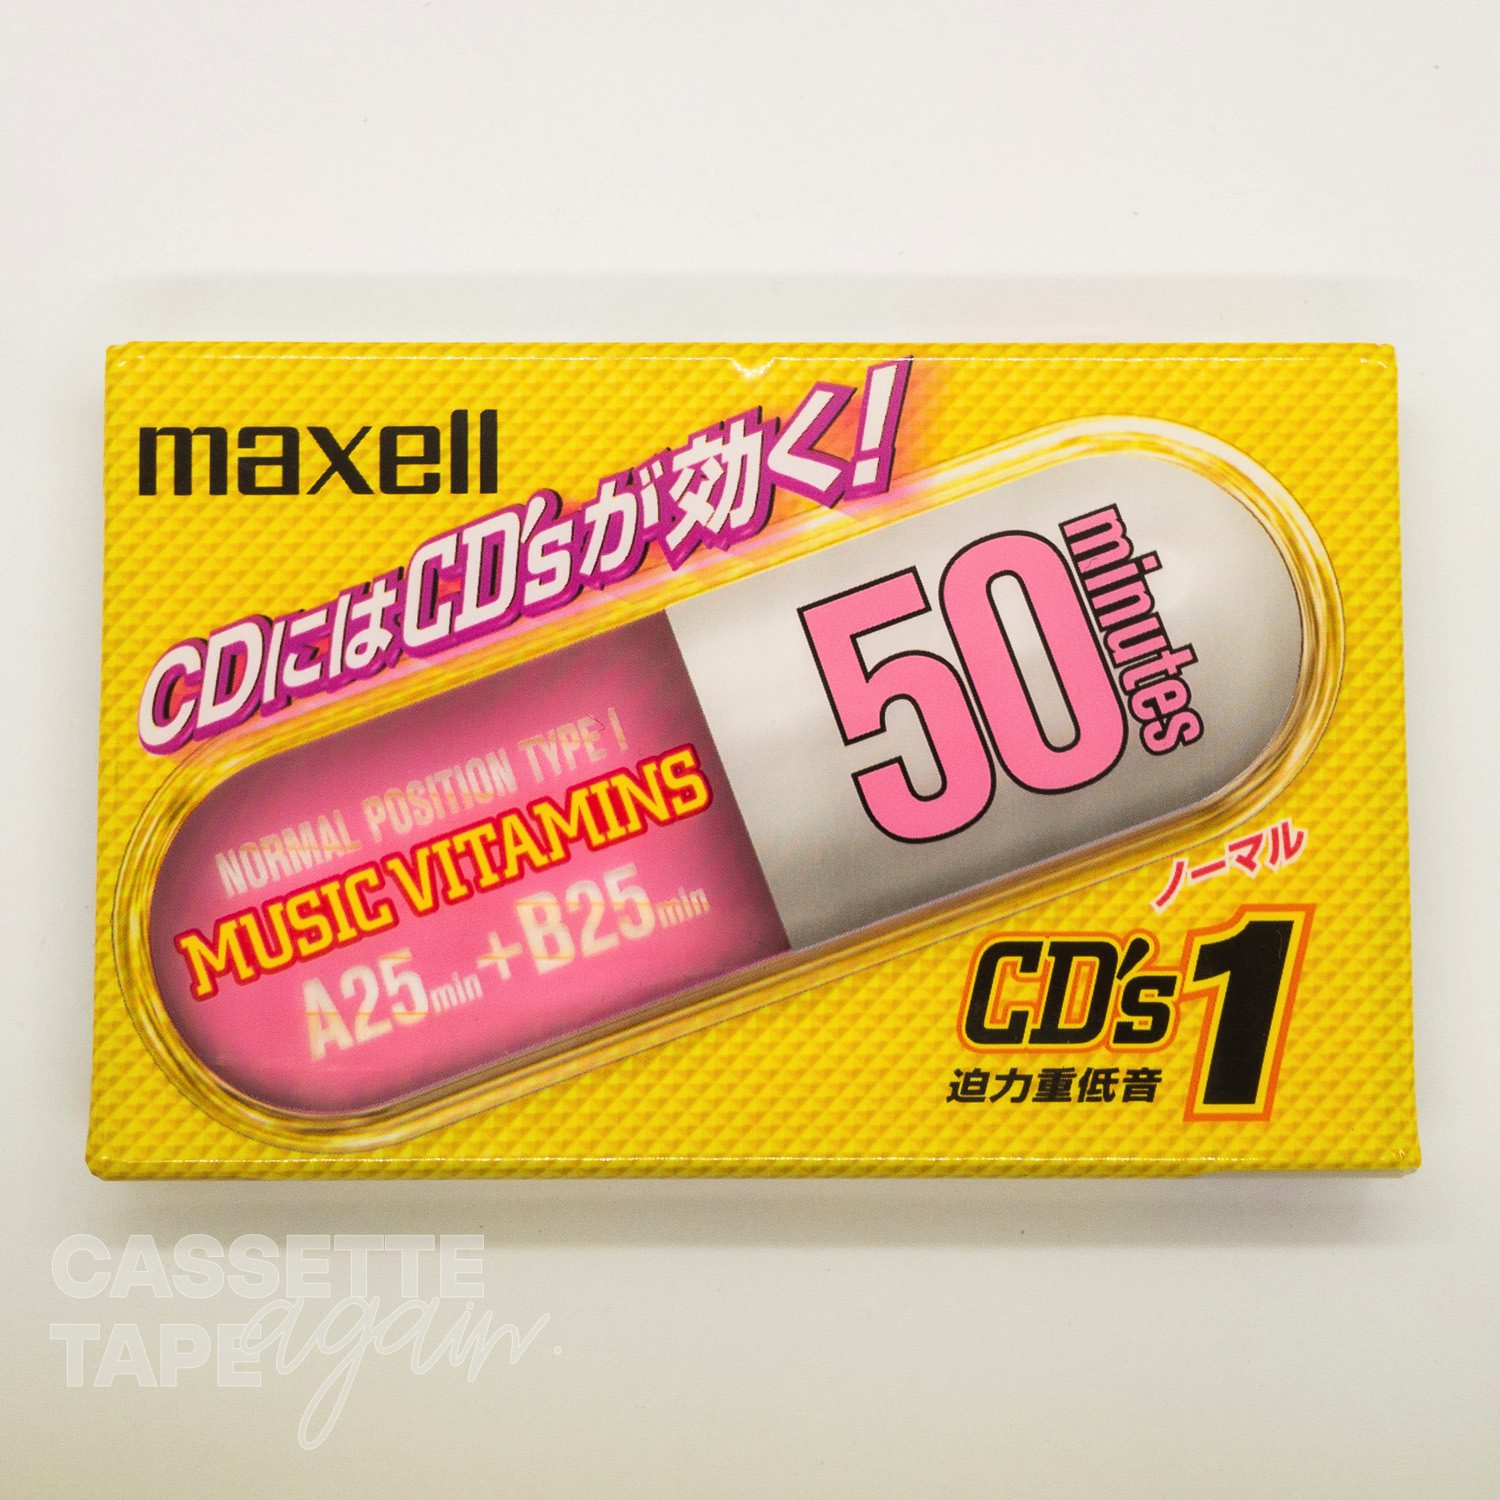 CD’s 1 50 / maxell(ノーマル)